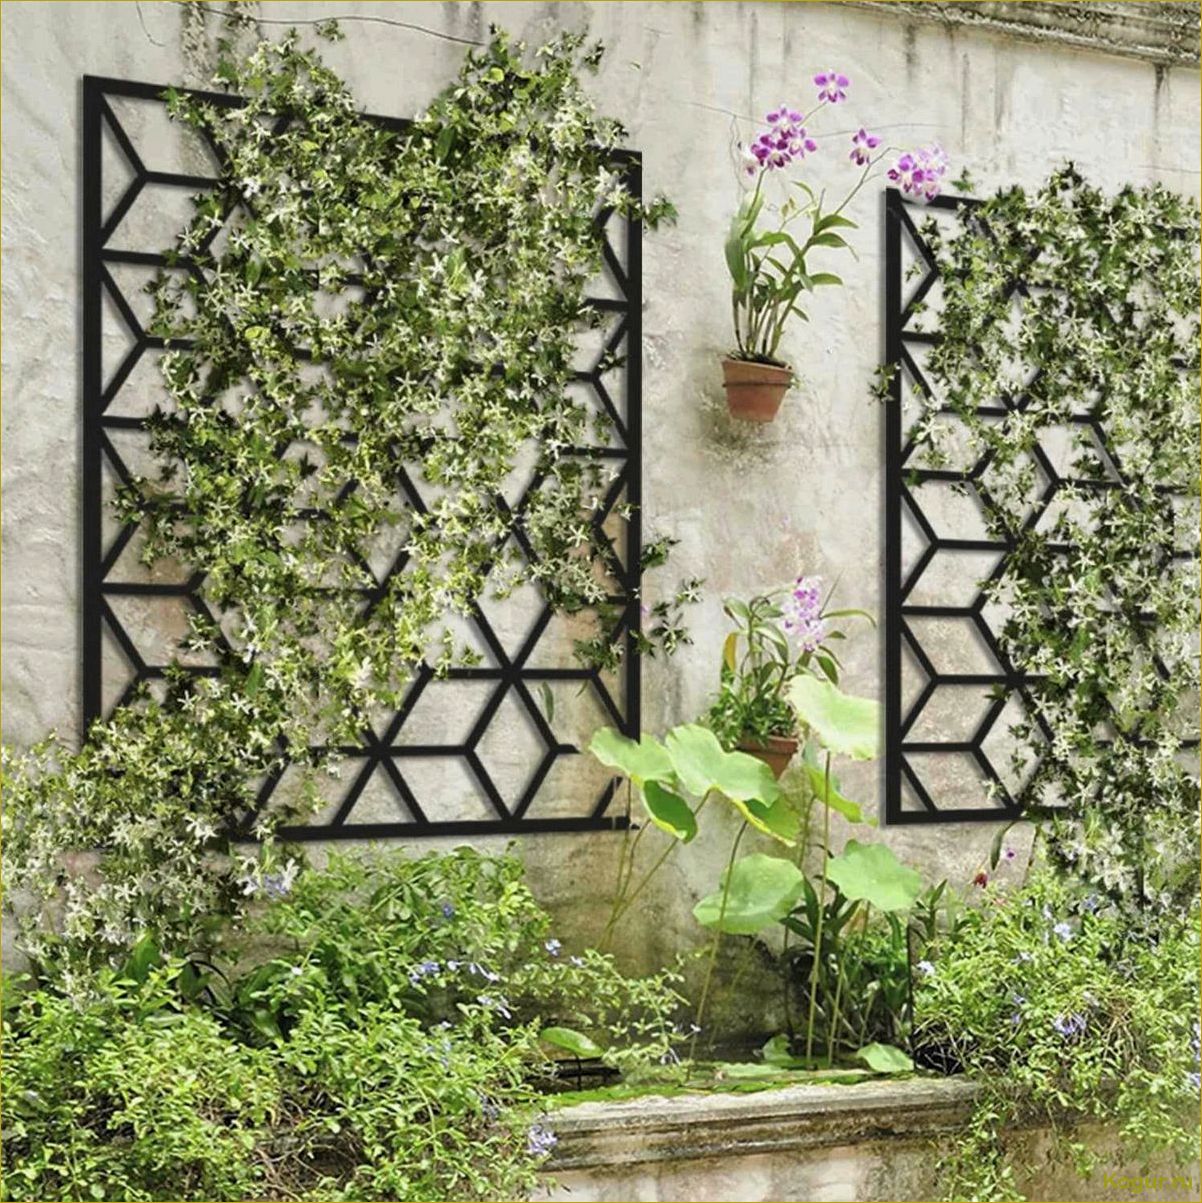 Как быстрорастущие вьющиеся растения могут преобразить ваш забор в привлекательный декор